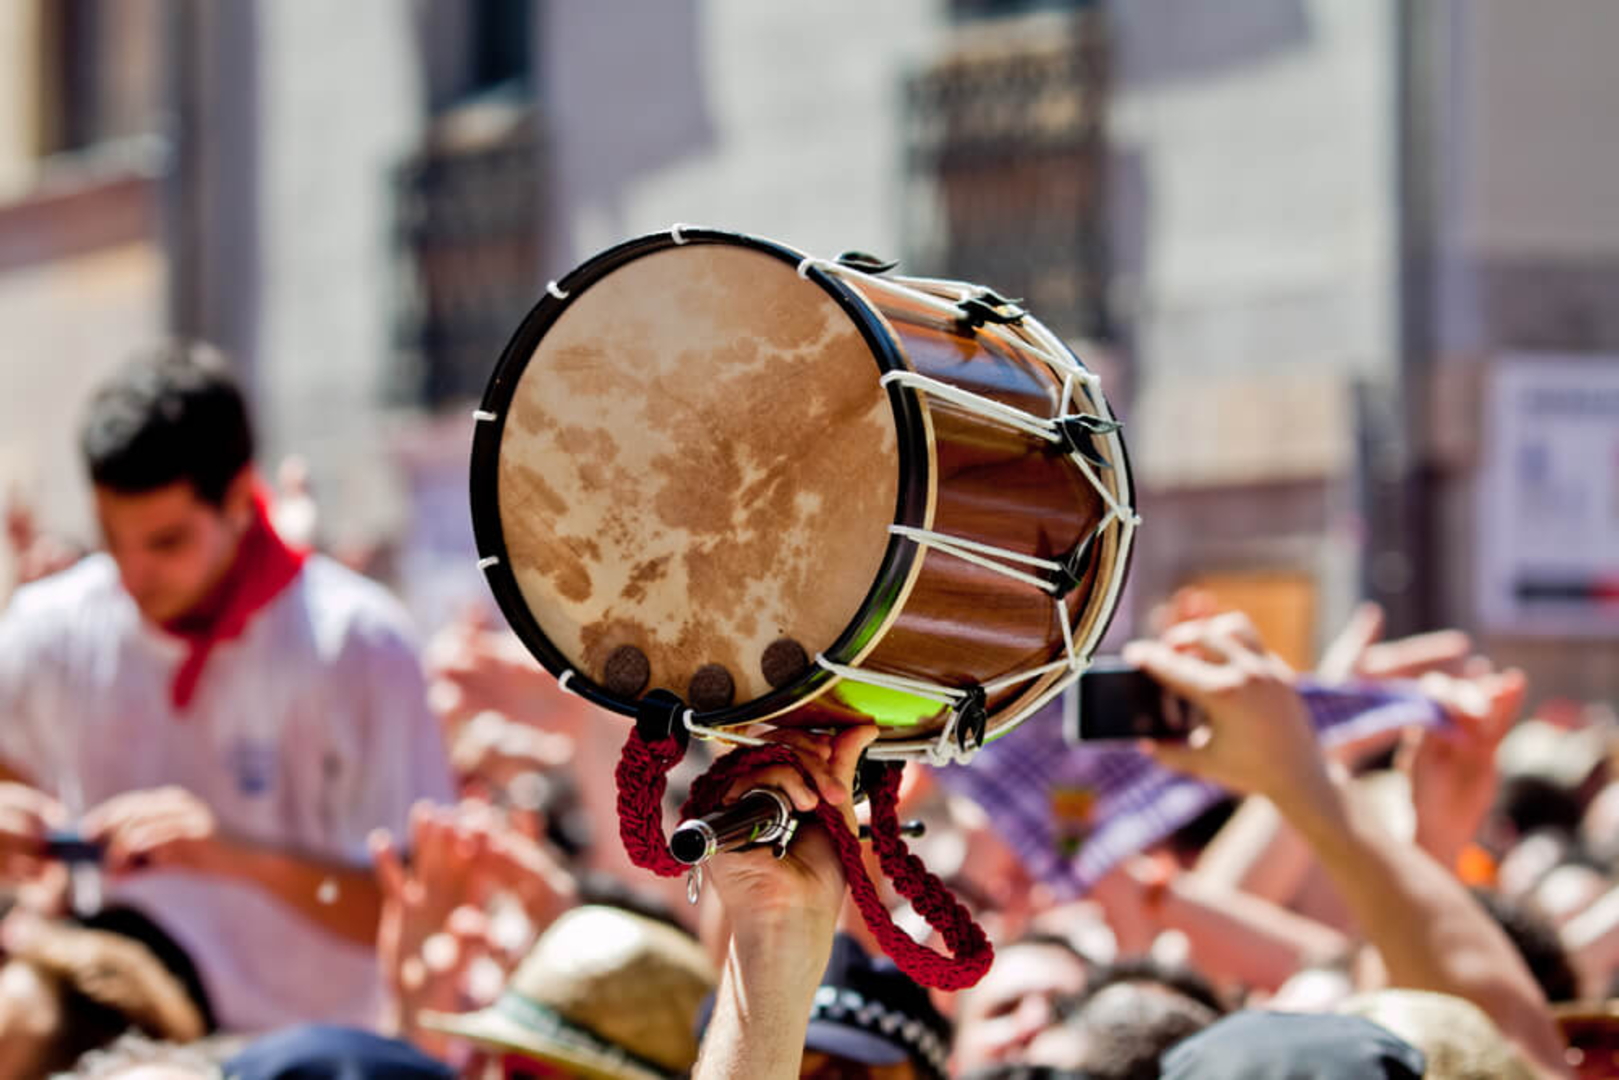 Sanfermines in Pamplona: Menschenmenge und typische Trommel der Volksmusik im Vordergrund